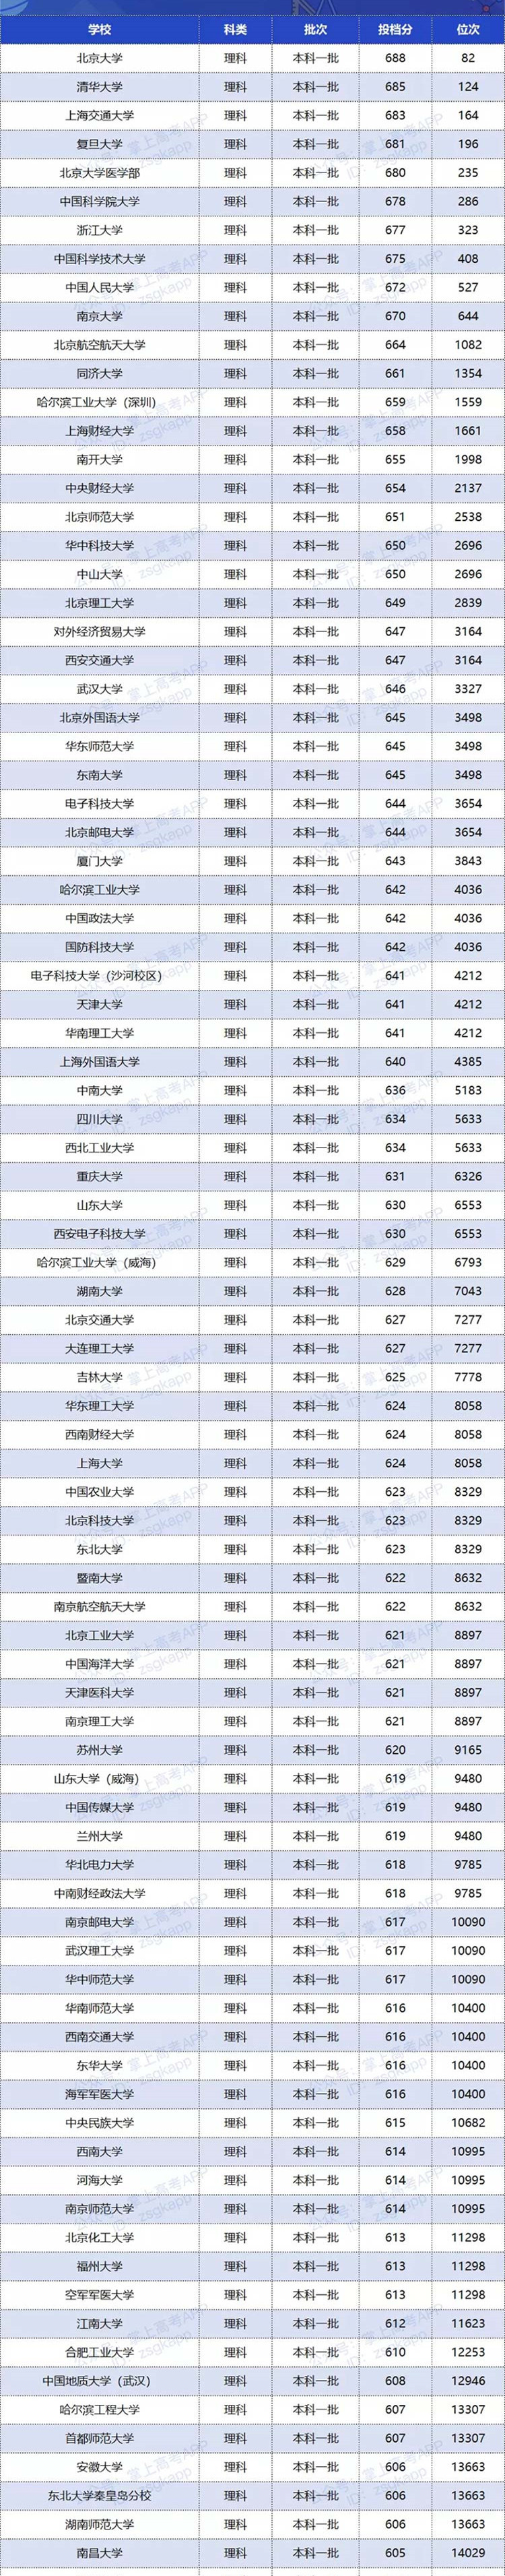 2020双一流大学在湖南投档分数线及位次排名情况一览表